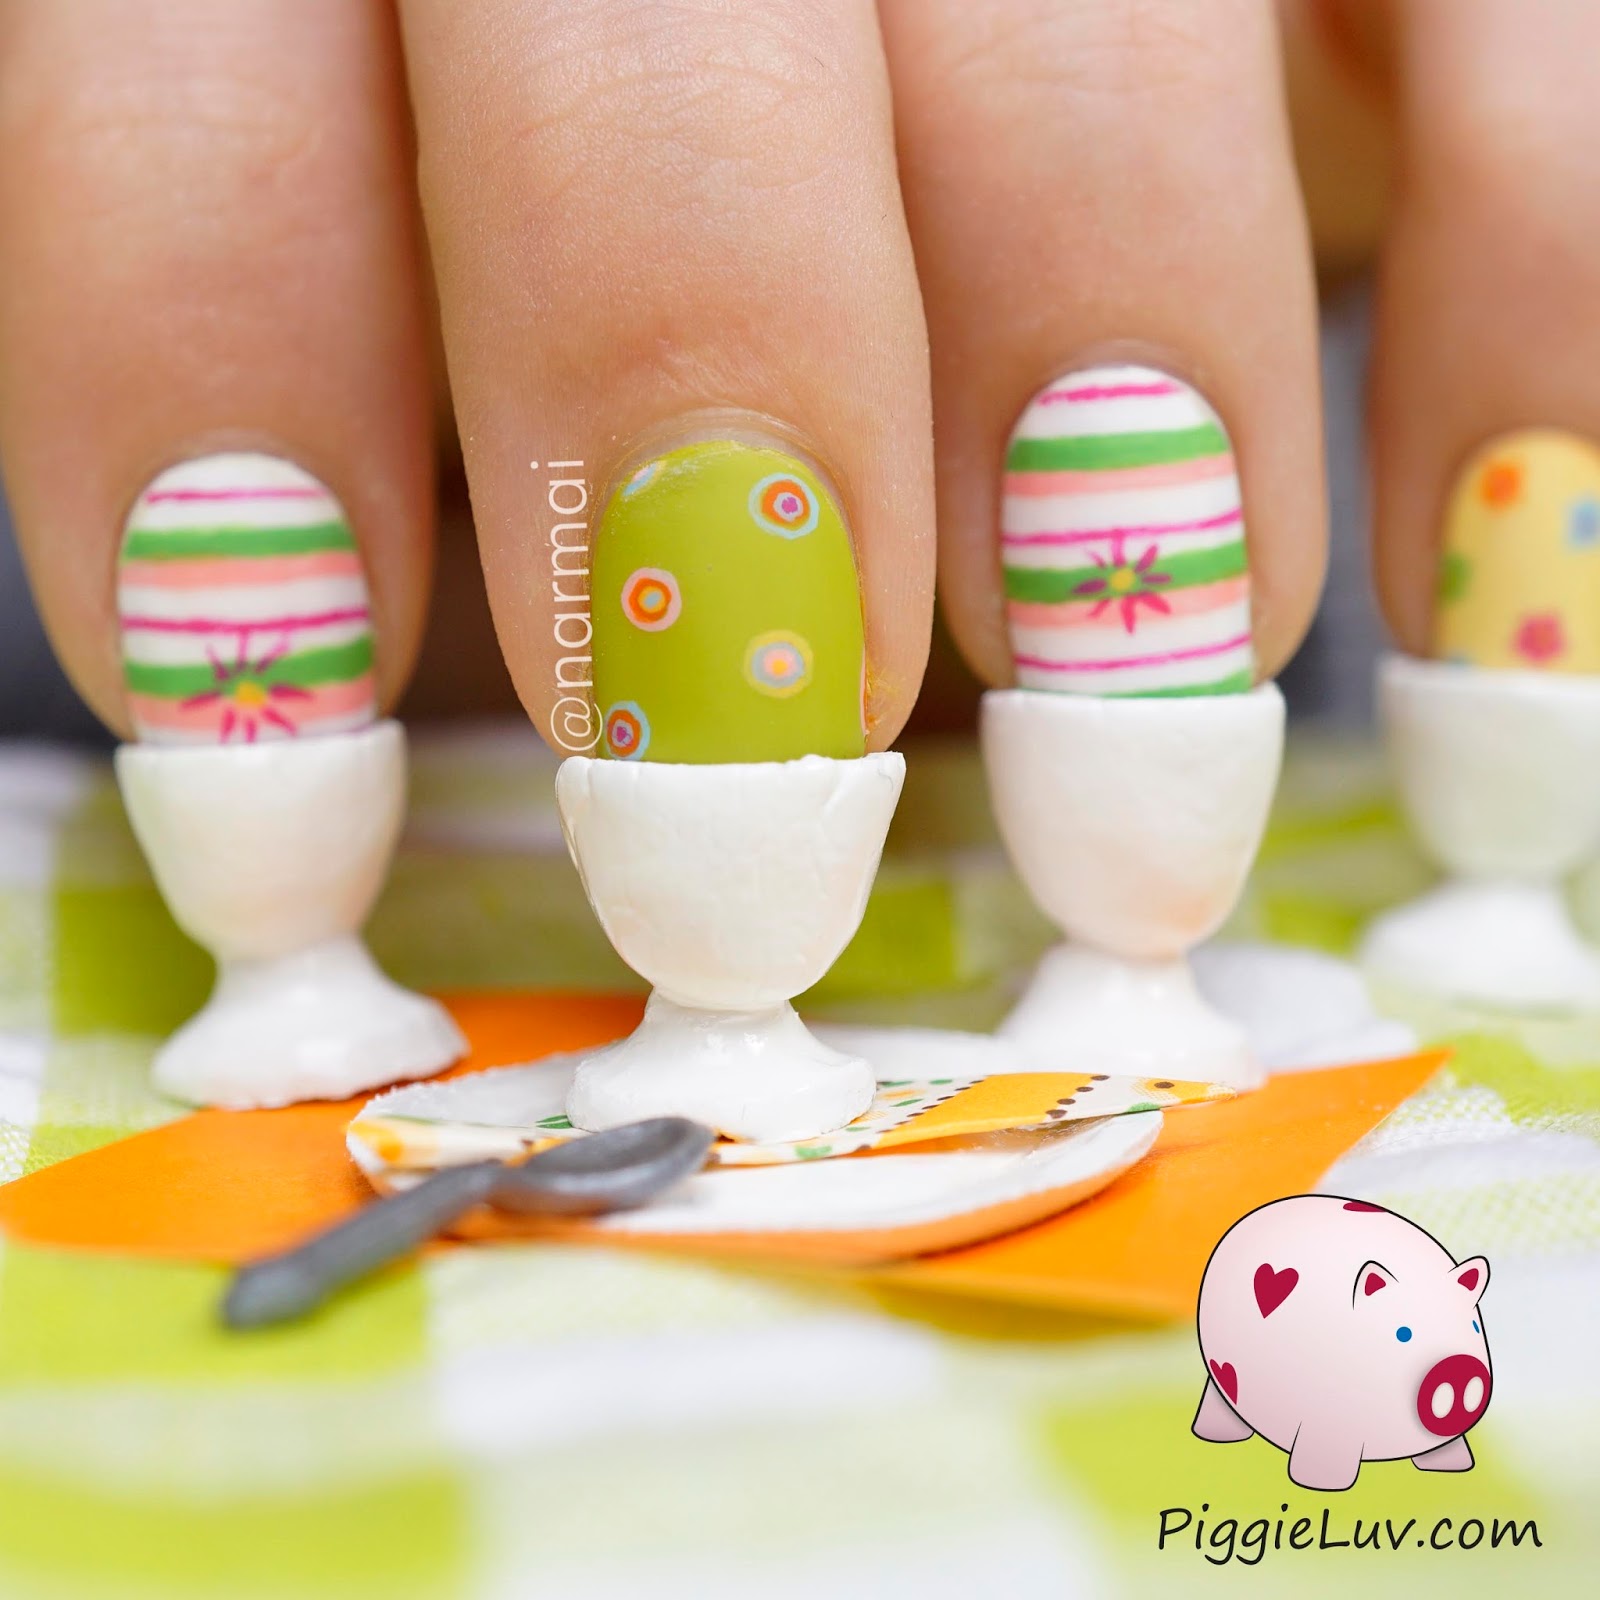 PiggieLuv: Easter eggs for breakfast, crazy 3D nail art